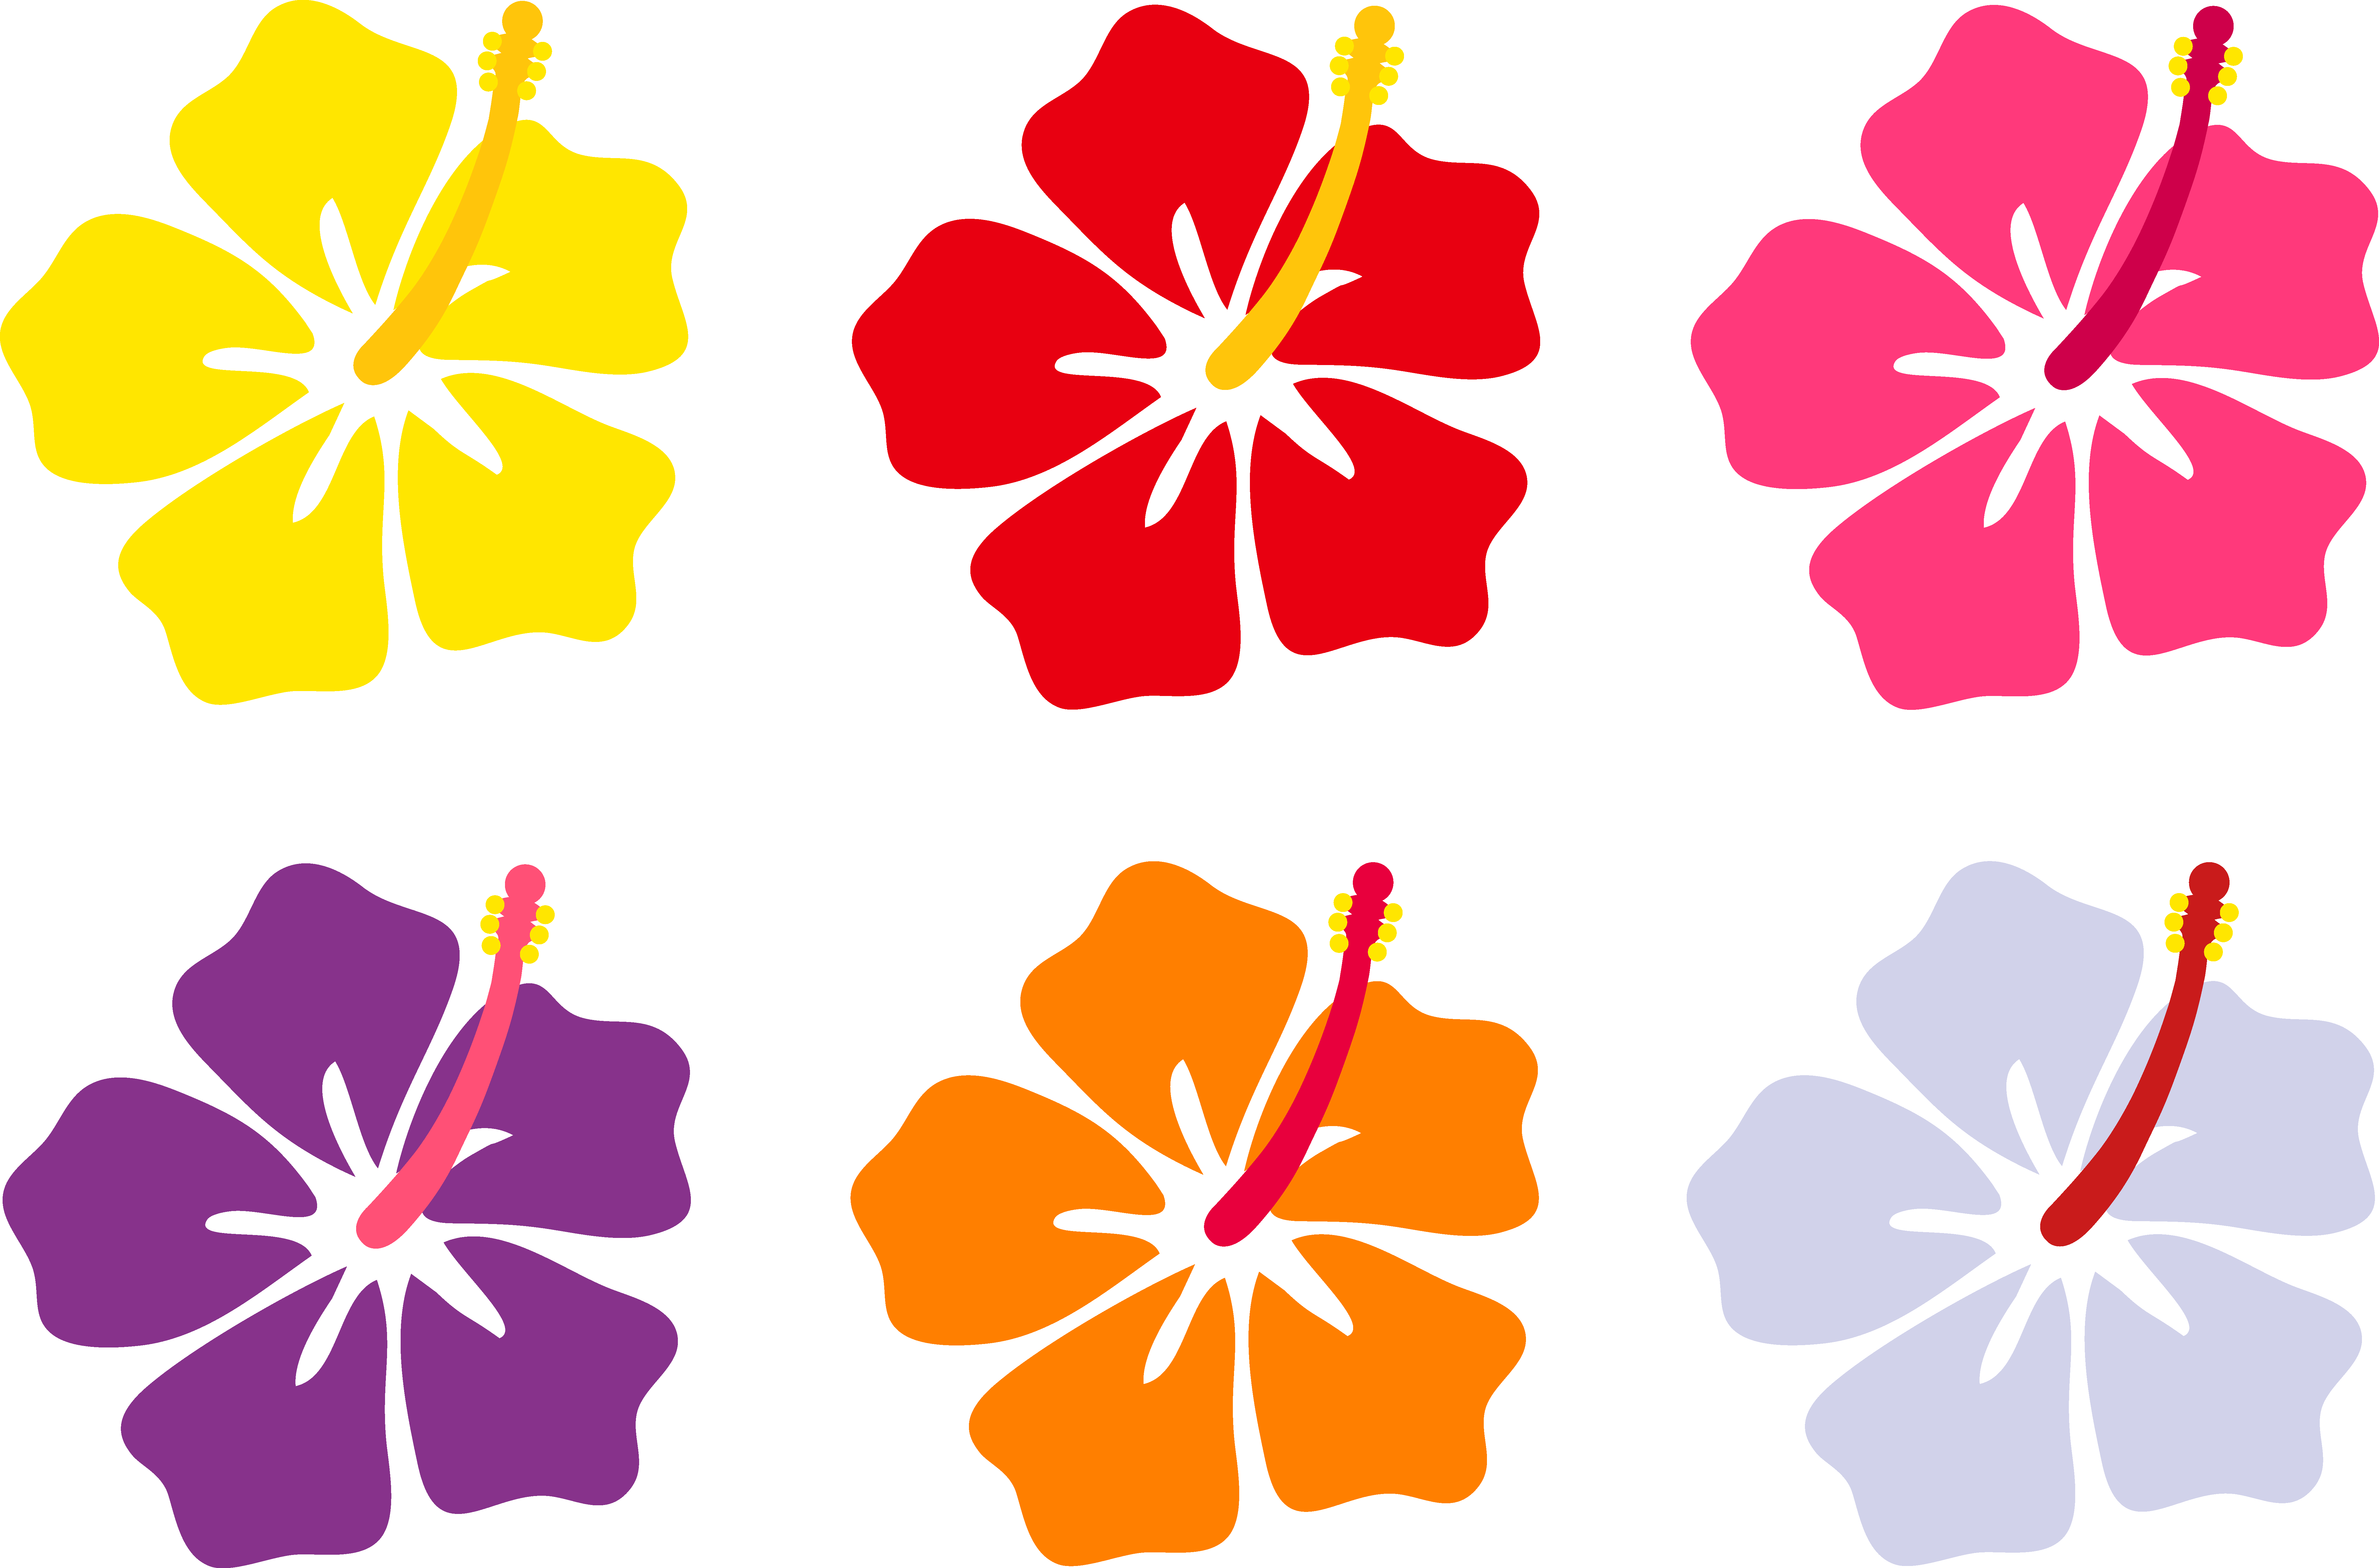 Flower Aloha Hawaiian Luau Free Transparent Image HQ PNG Image